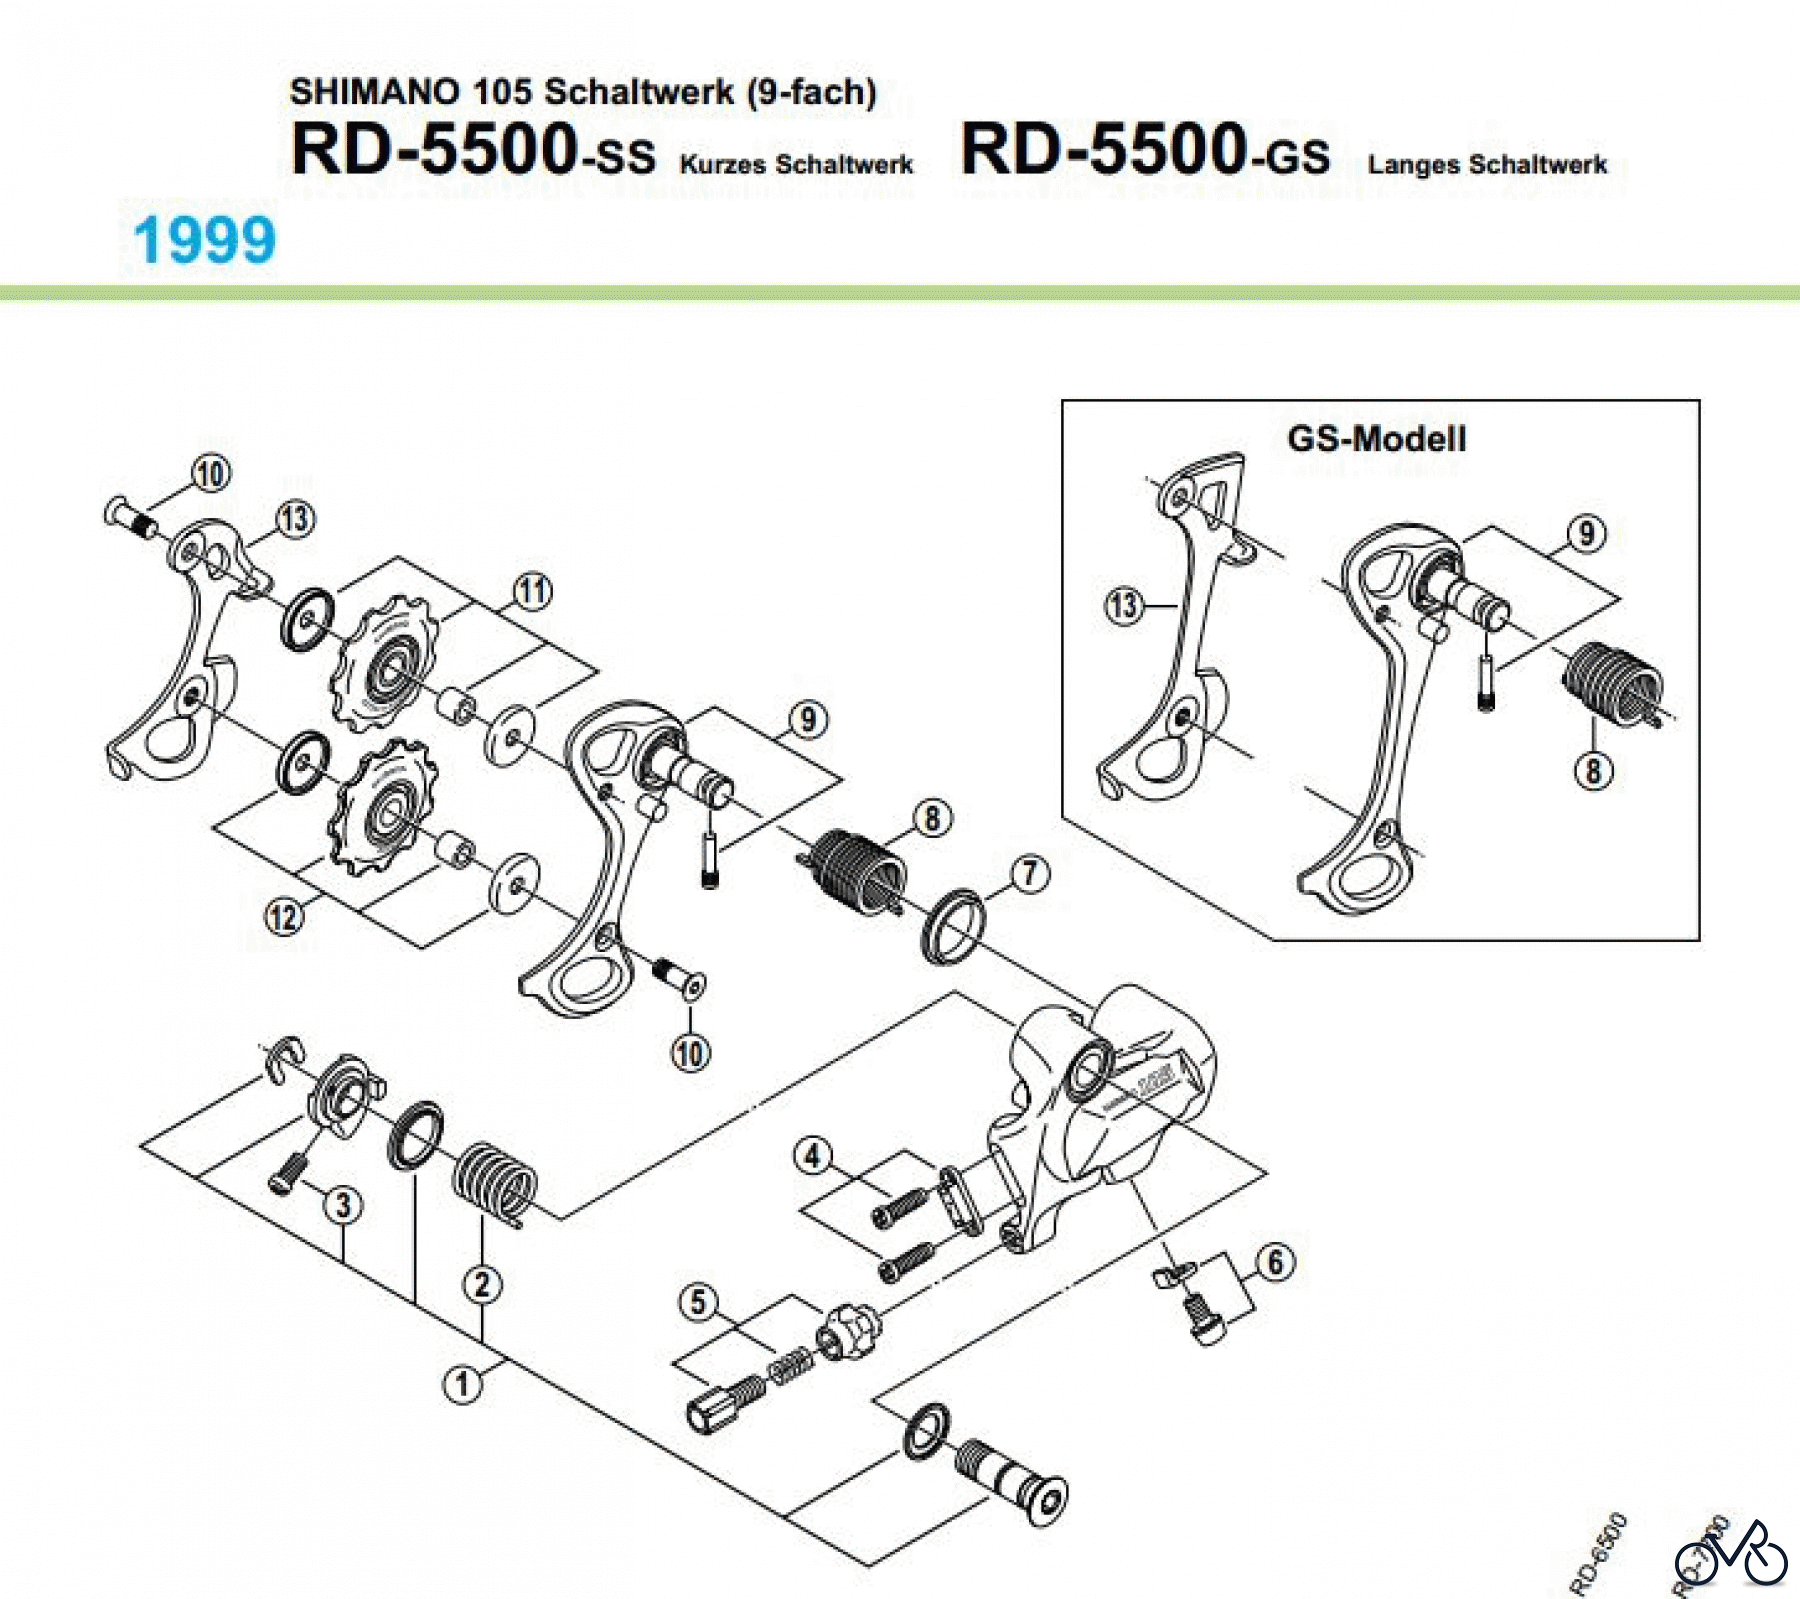  Shimano RD Rear Derailleur - Schaltwerk RD-5500-99